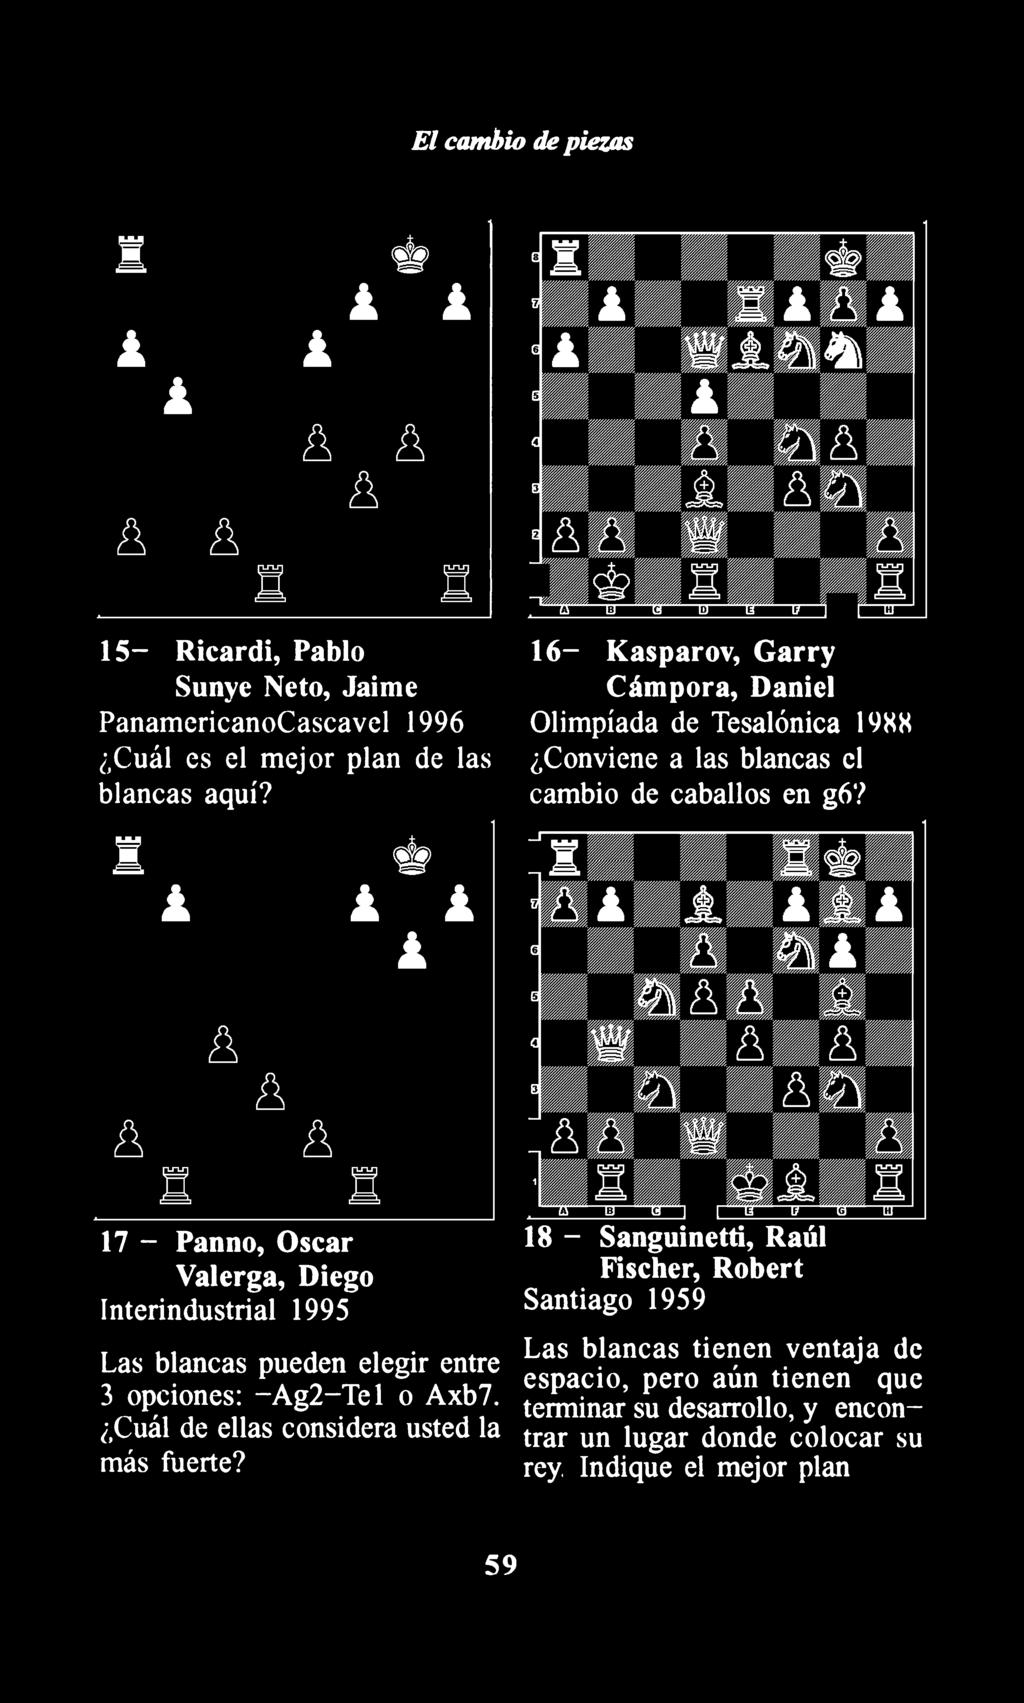 17 - Panno, Osear Valerga, Diego Interindustrial 1995 Las blancas pueden elegir entre 3 opciones: -Ag2-Tel o Axb7.